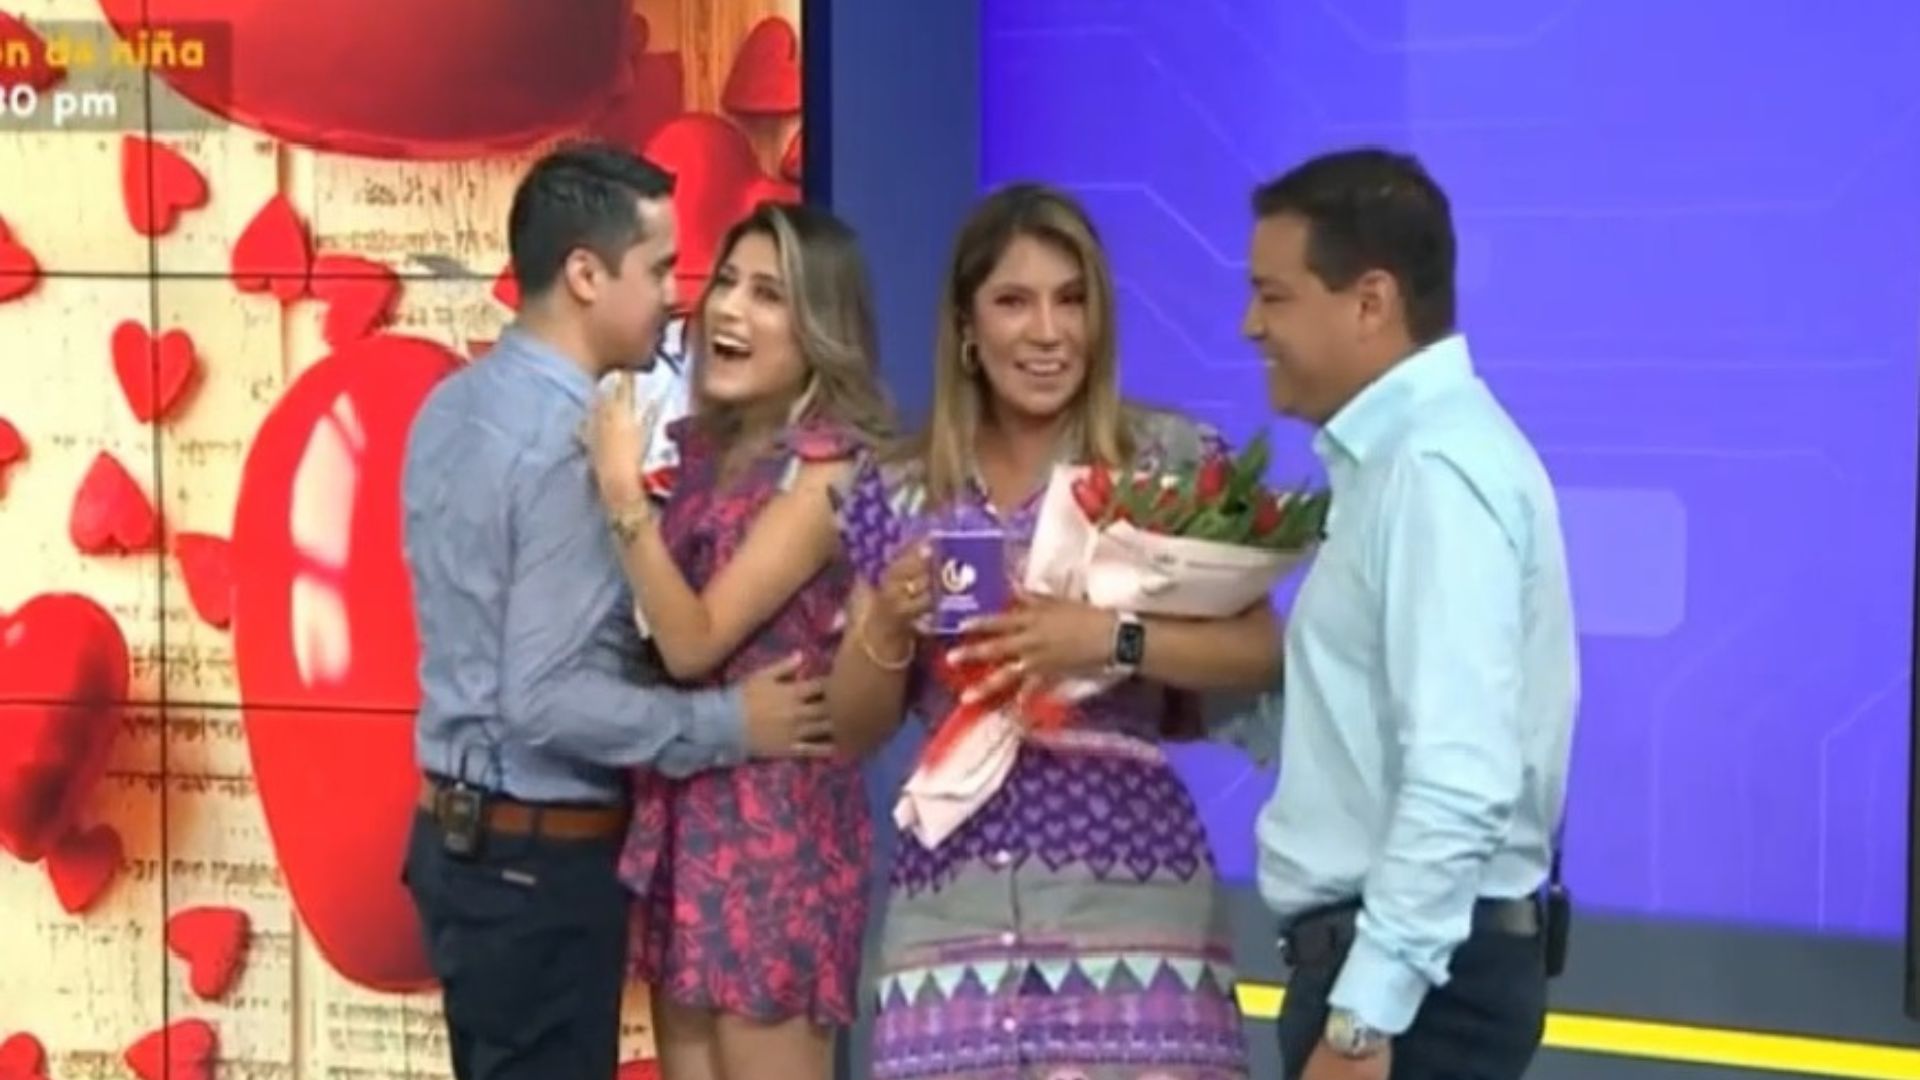 Alicia Retto y Fátima Chávez son sorprendidas por sus parejas en programa en vivo por el Día de San Valentín. Latina TV.